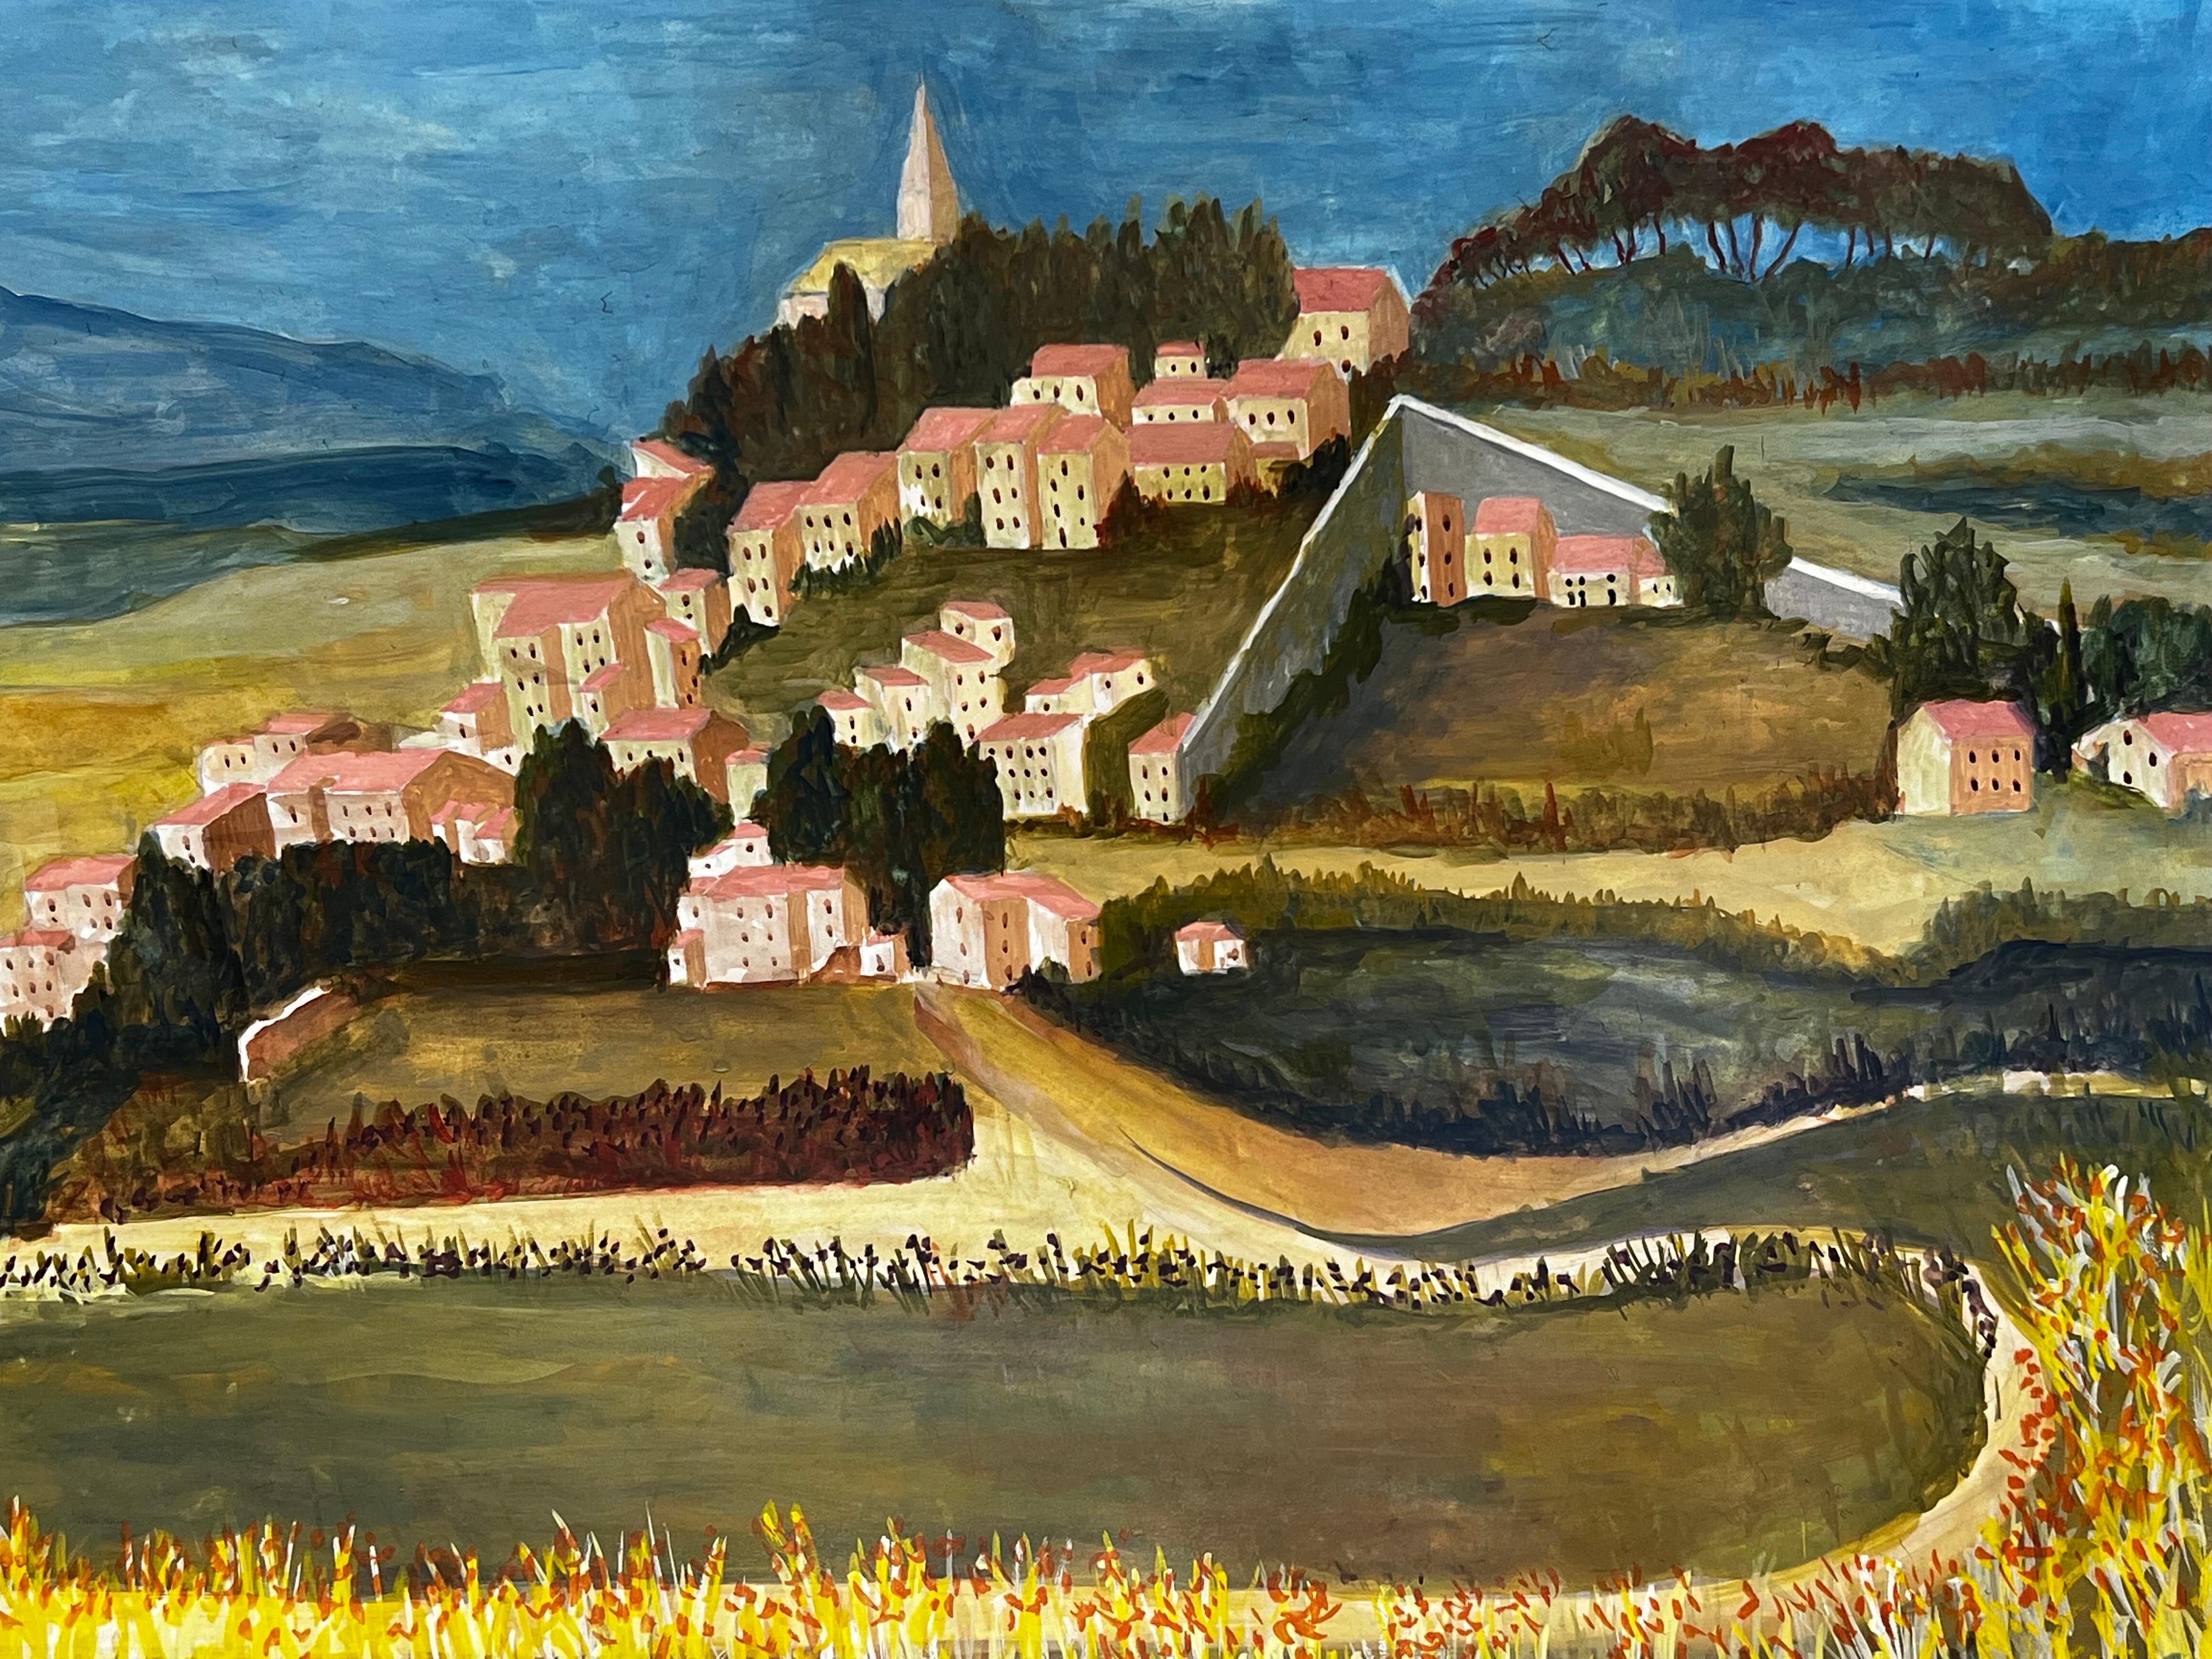 Landscape Painting Bernard Labbe - Peinture moderniste/ cubiste des années 1950 - Superbe paysage français des années 1950